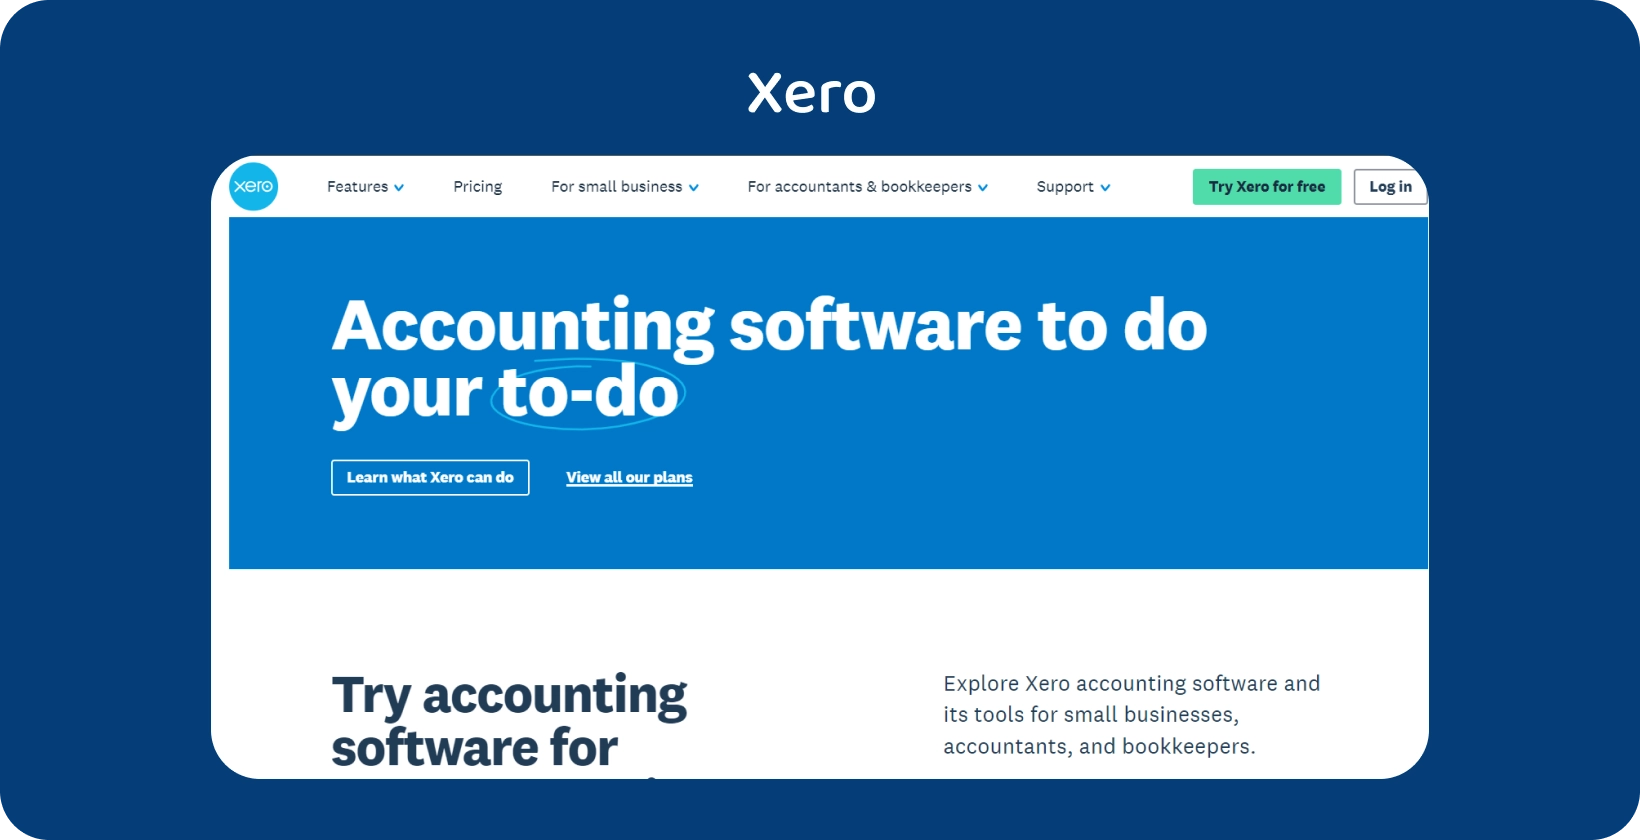 Moderne boekhoudsoftware-interface op de website van Xero, die het gemak van het beheren van financiële taken laat zien.